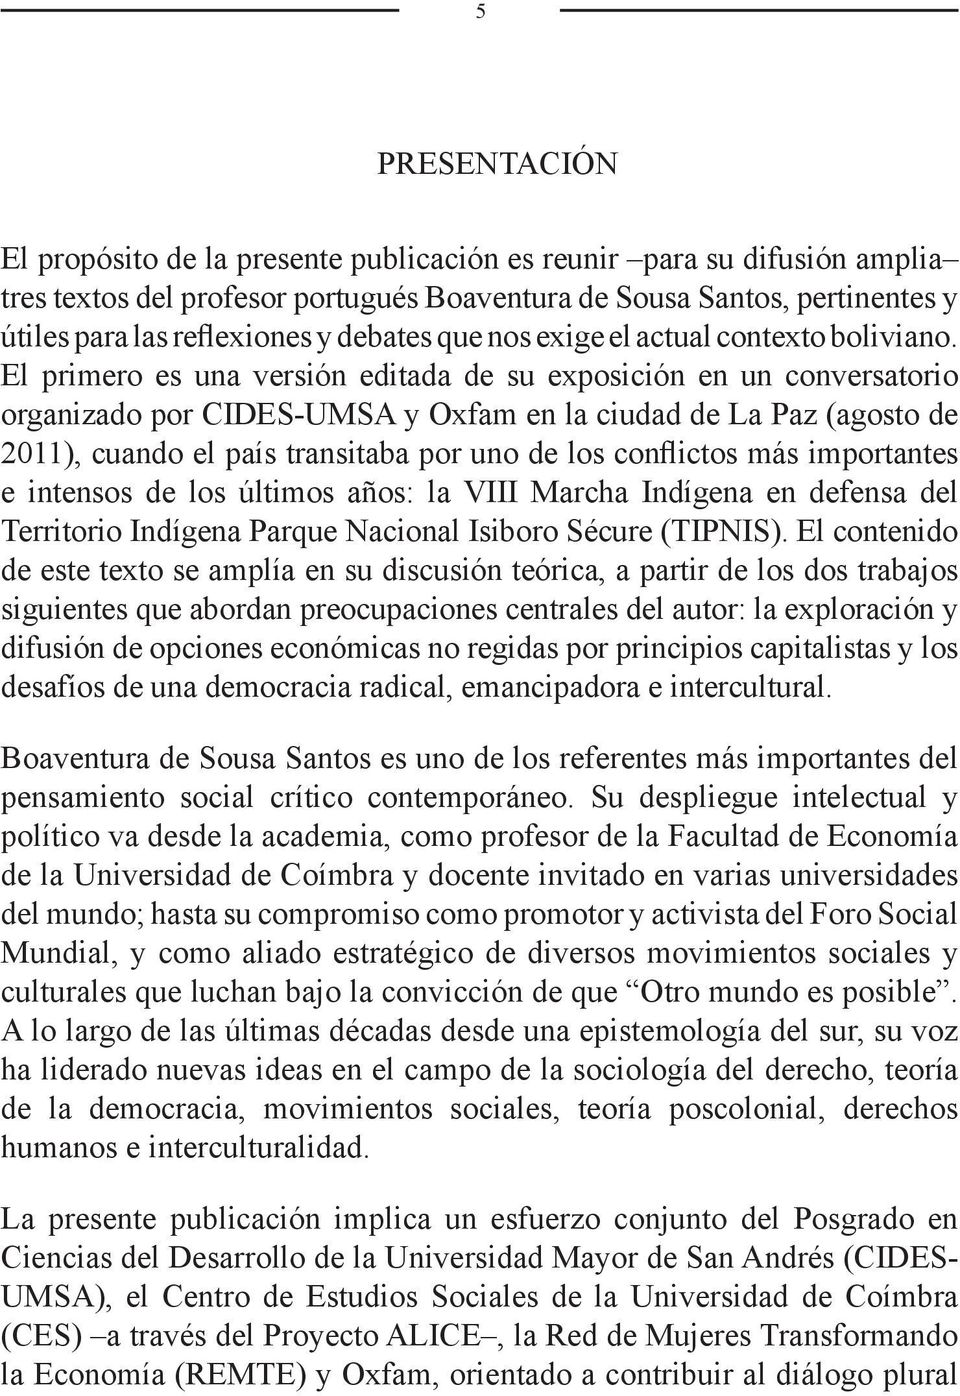 El primero es una versión editada de su exposición en un conversatorio organizado por CIDES-UMSA y Oxfam en la ciudad de La Paz (agosto de 2011), cuando el país transitaba por uno de los conflictos